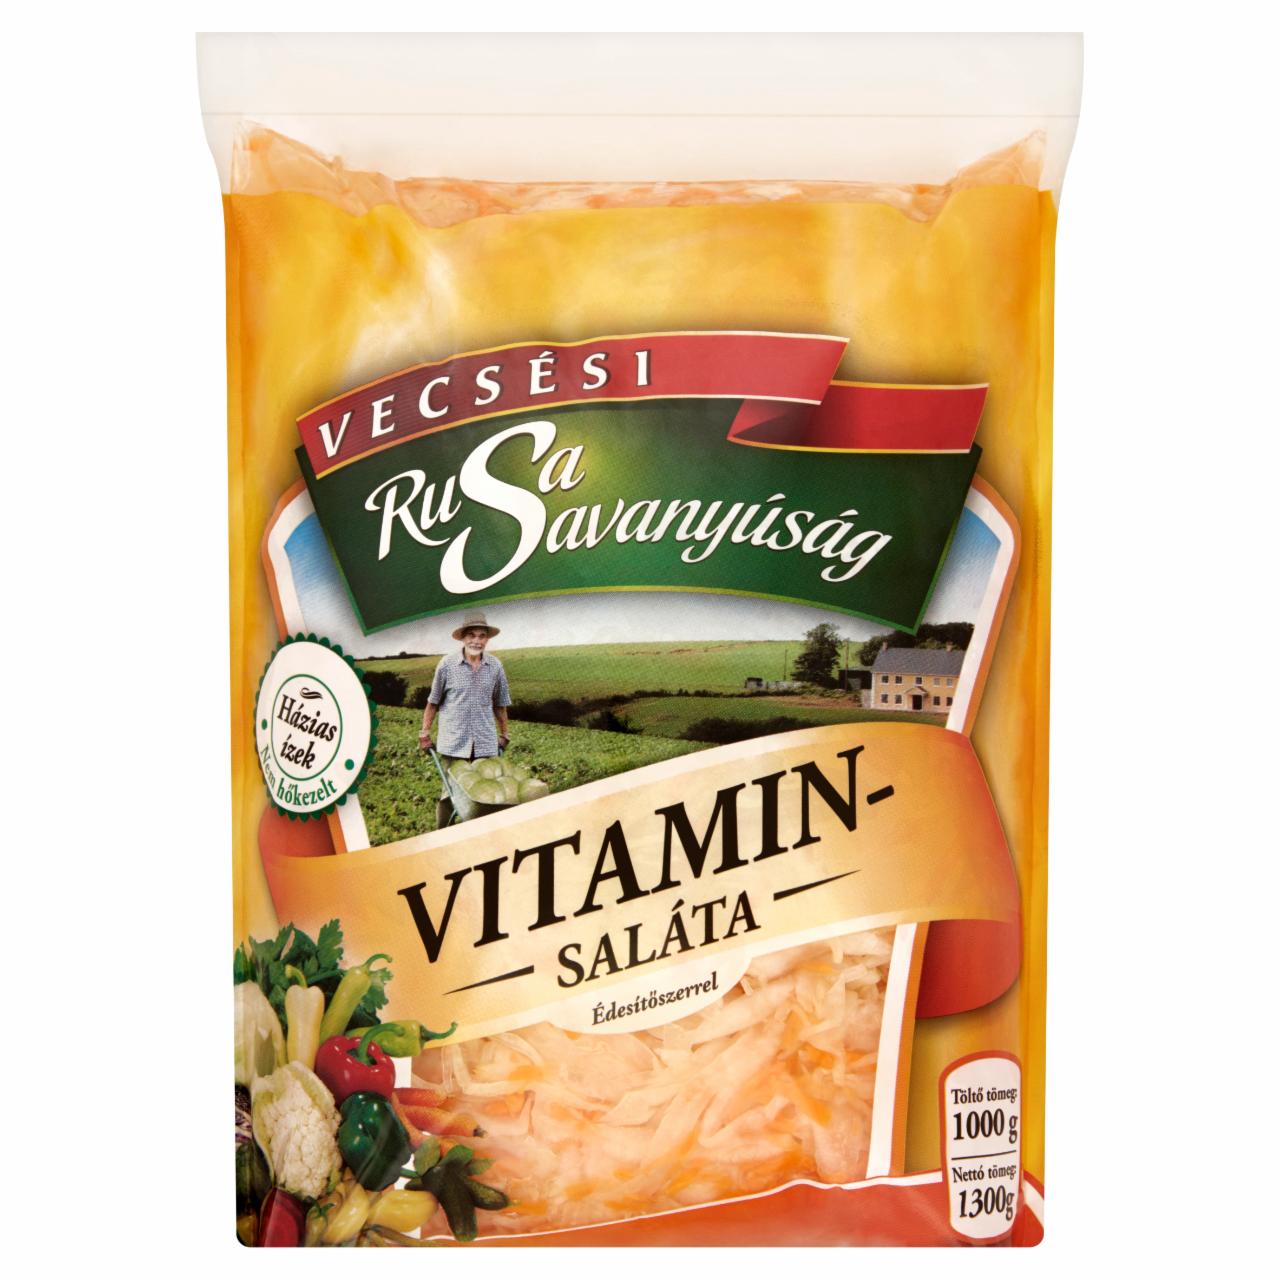 Képek - Rusa Savanyúság vitaminsaláta édesítőszerrel 1300 g